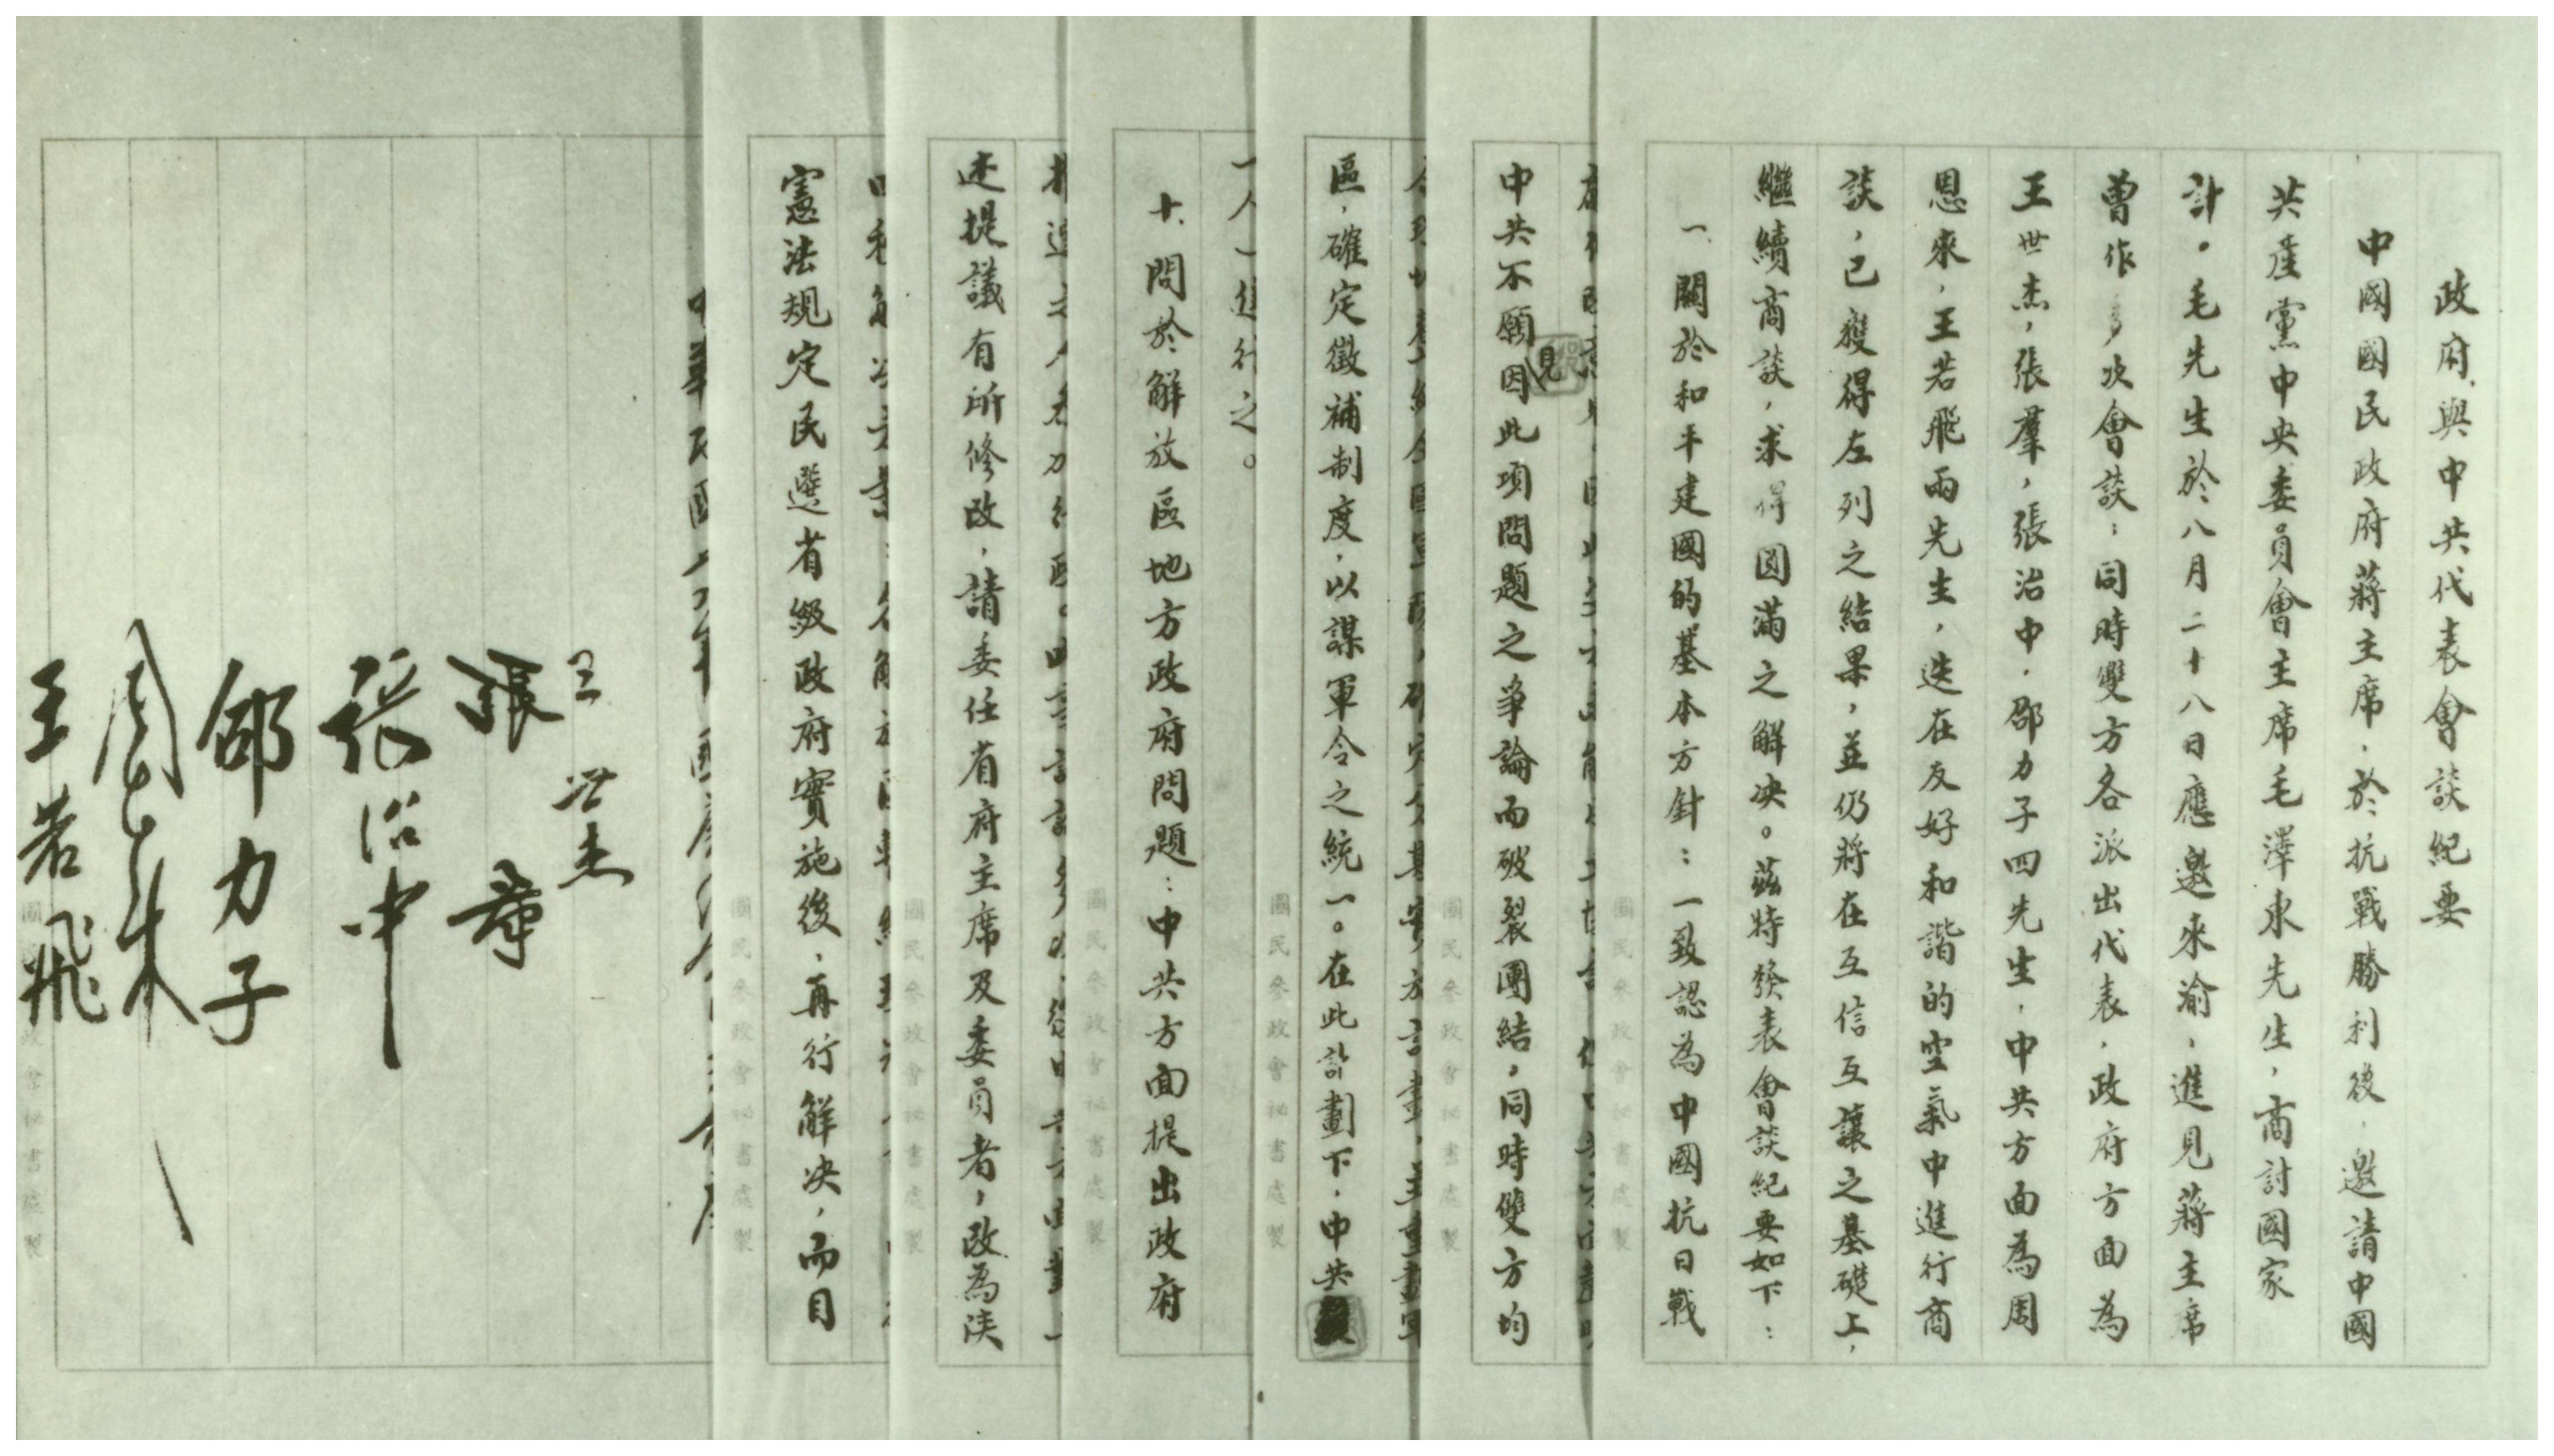 1-1、抗战胜利后，中国共产党为避免内战、争取和平，于1945年10月10日在重庆与国民党签订了《政府与中共代表会谈纪要》（即《双十协定》）。图为《双十协定》文本。。.jpg